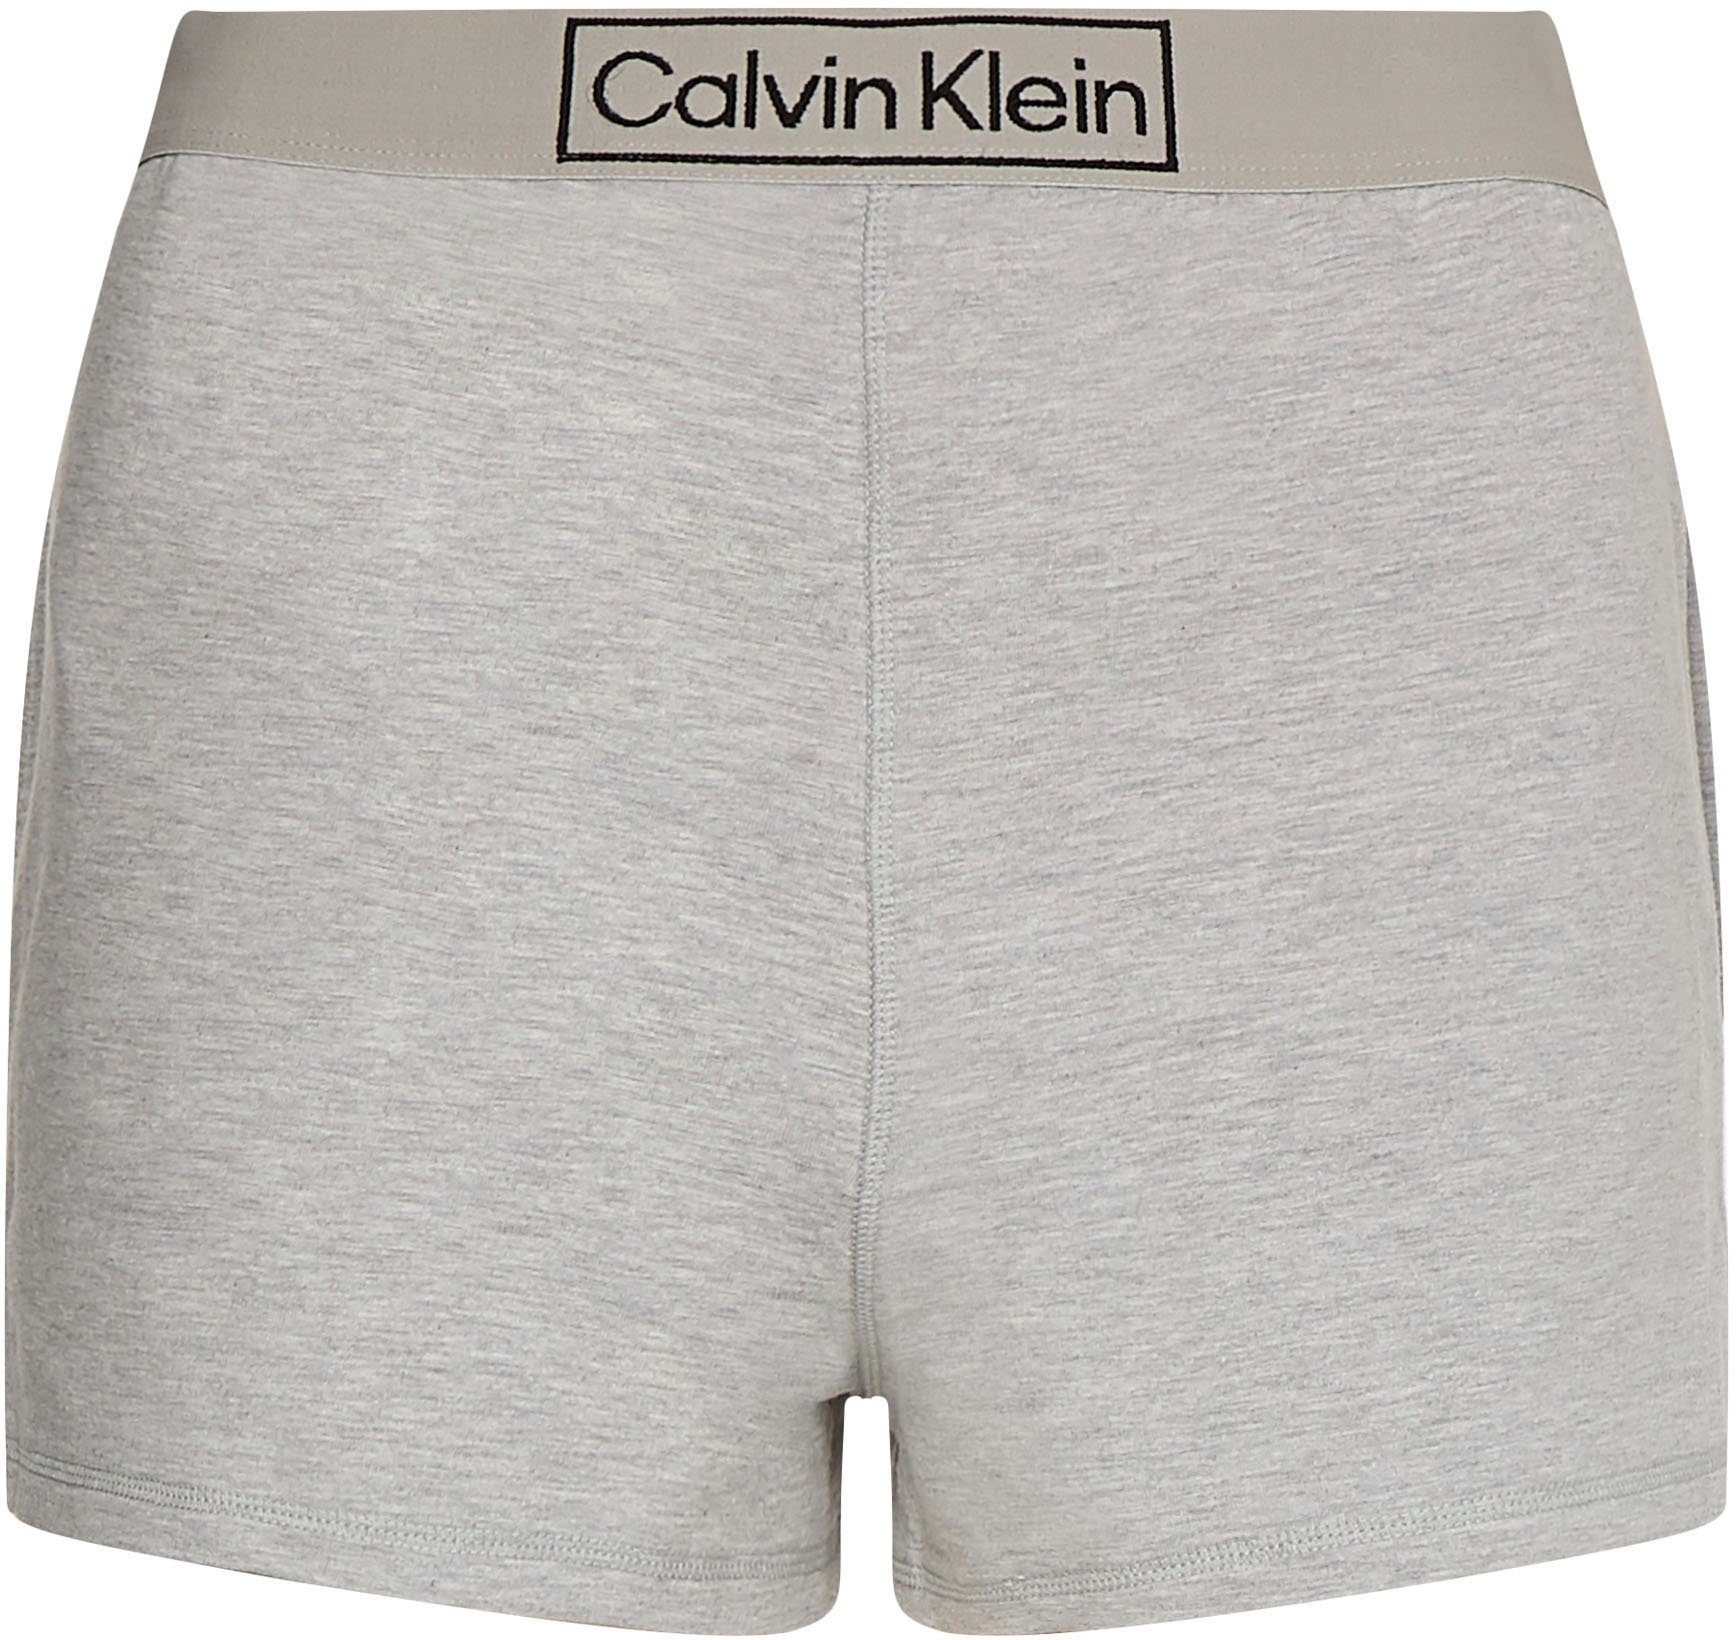 Underwear Calvin bequemen Gummizug Klein Schlafshorts mit